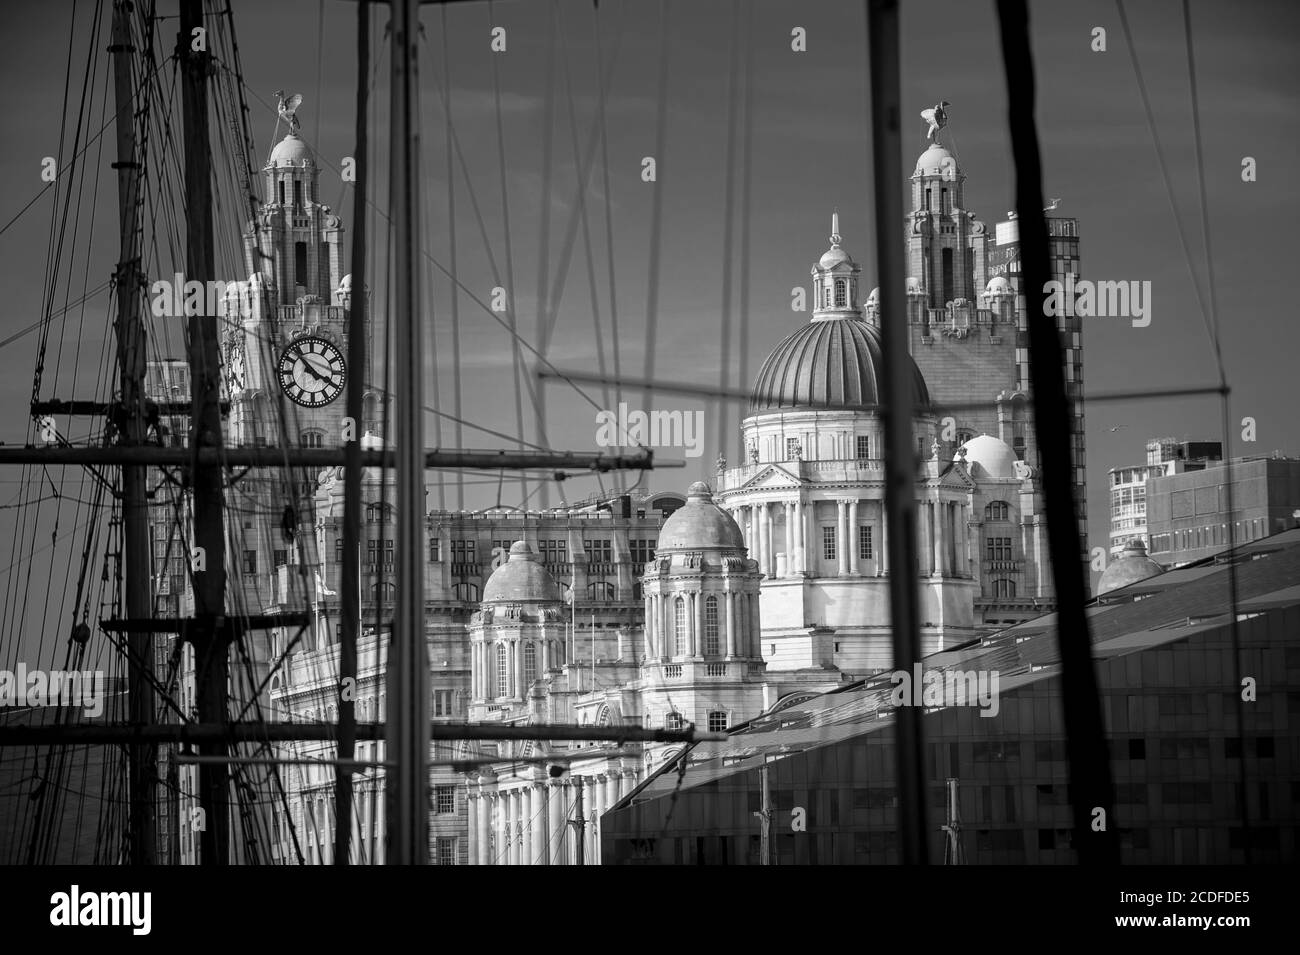 Vous pouvez admirer à travers des gréements et des mâts de navires défocutés jusqu'aux célèbres vieux bâtiments de bord de mer, les trois grâces, de Liverpool, au Royaume-Uni. Mise au point sélective sur bui Banque D'Images